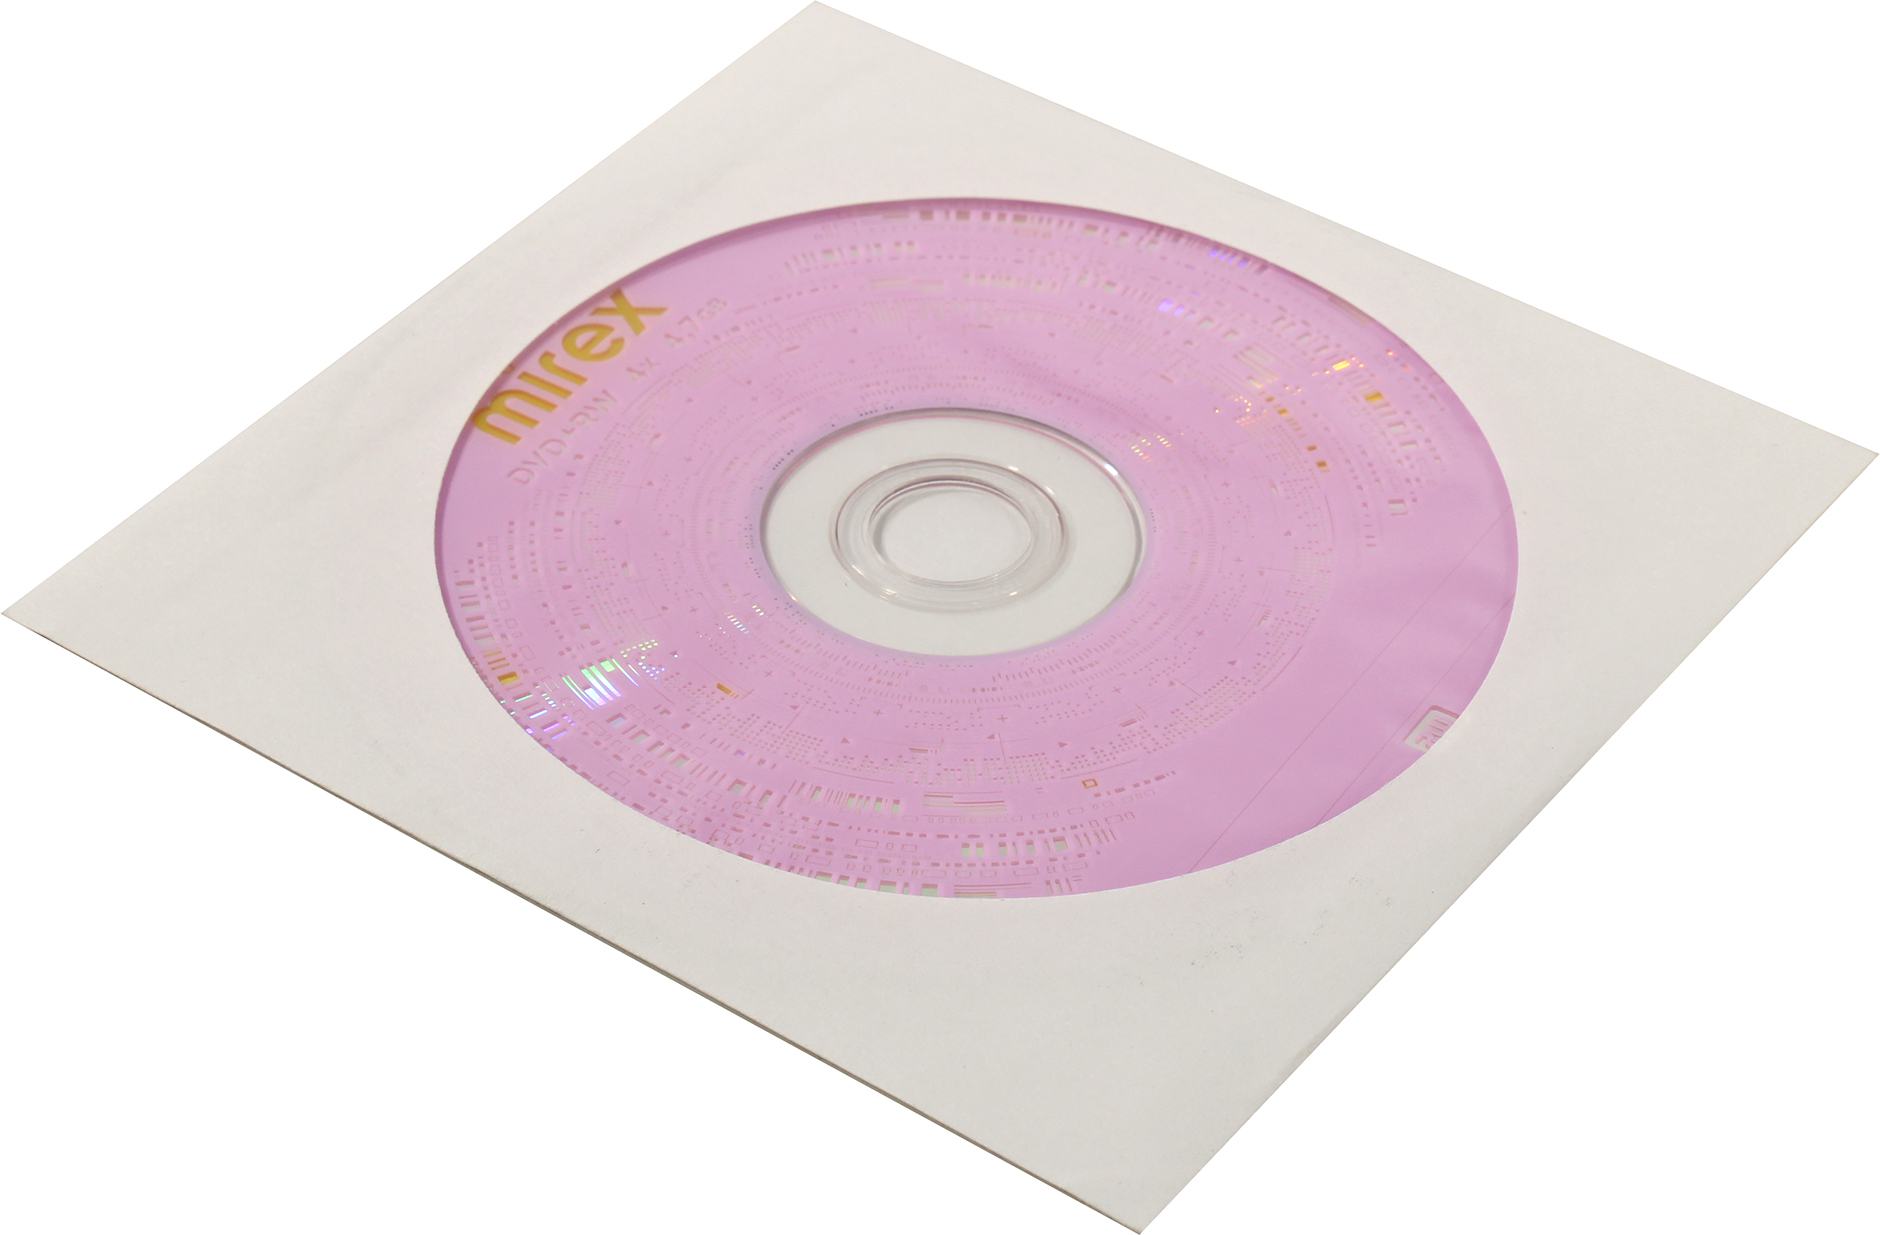 Диск Mirex DVD+RW, 4.7Gb, 4x, бумажный конверт, 1 шт, Printable (050444)